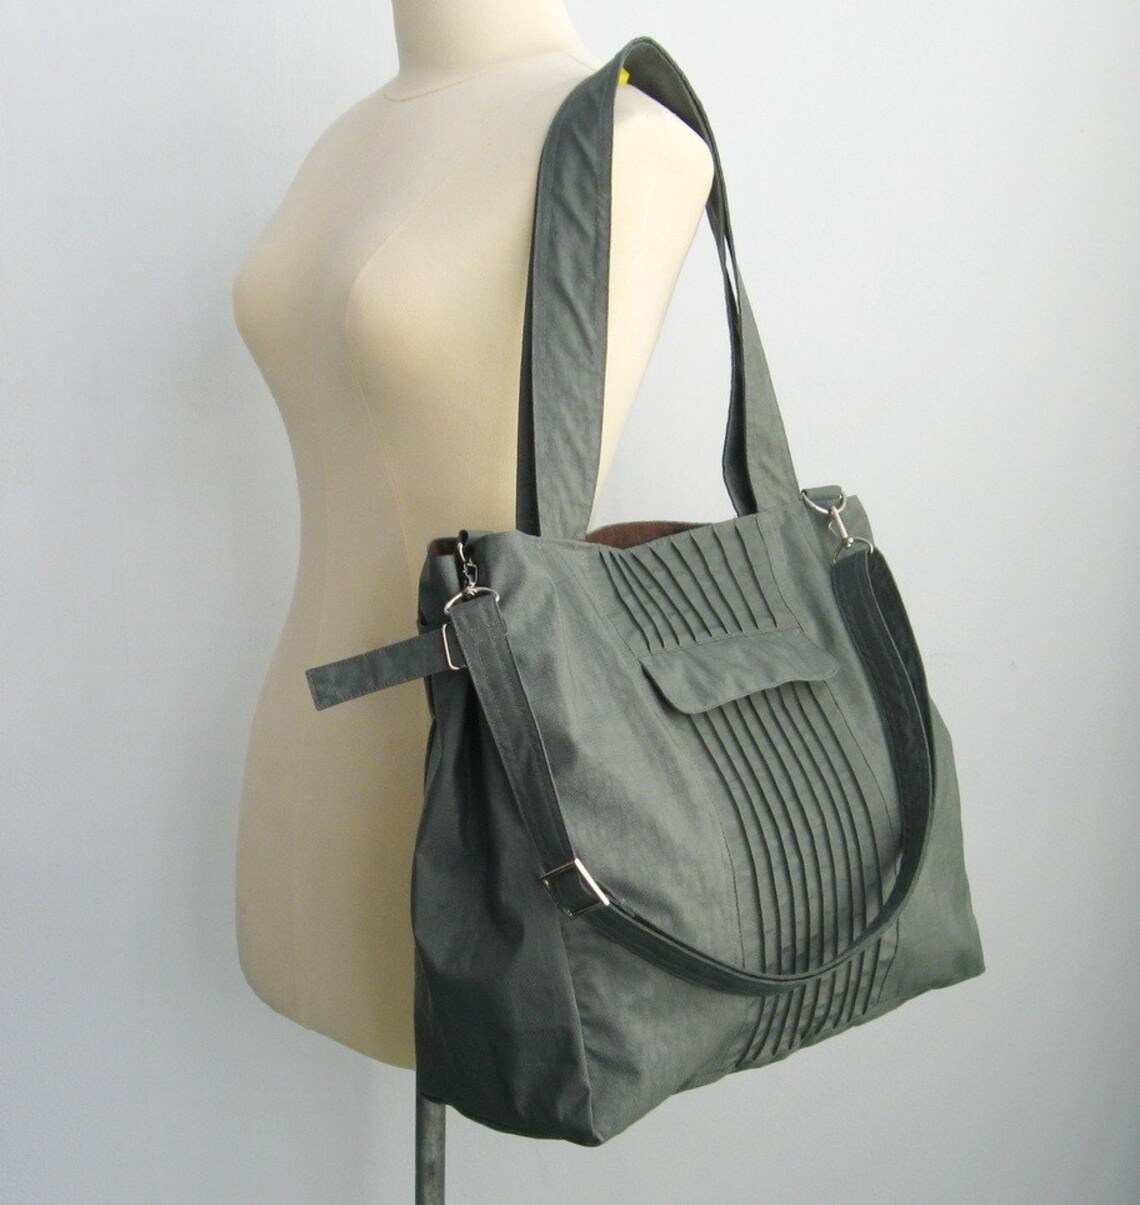 Grey Water-Resistant Bag diaper bag gym bag cross body | Etsy